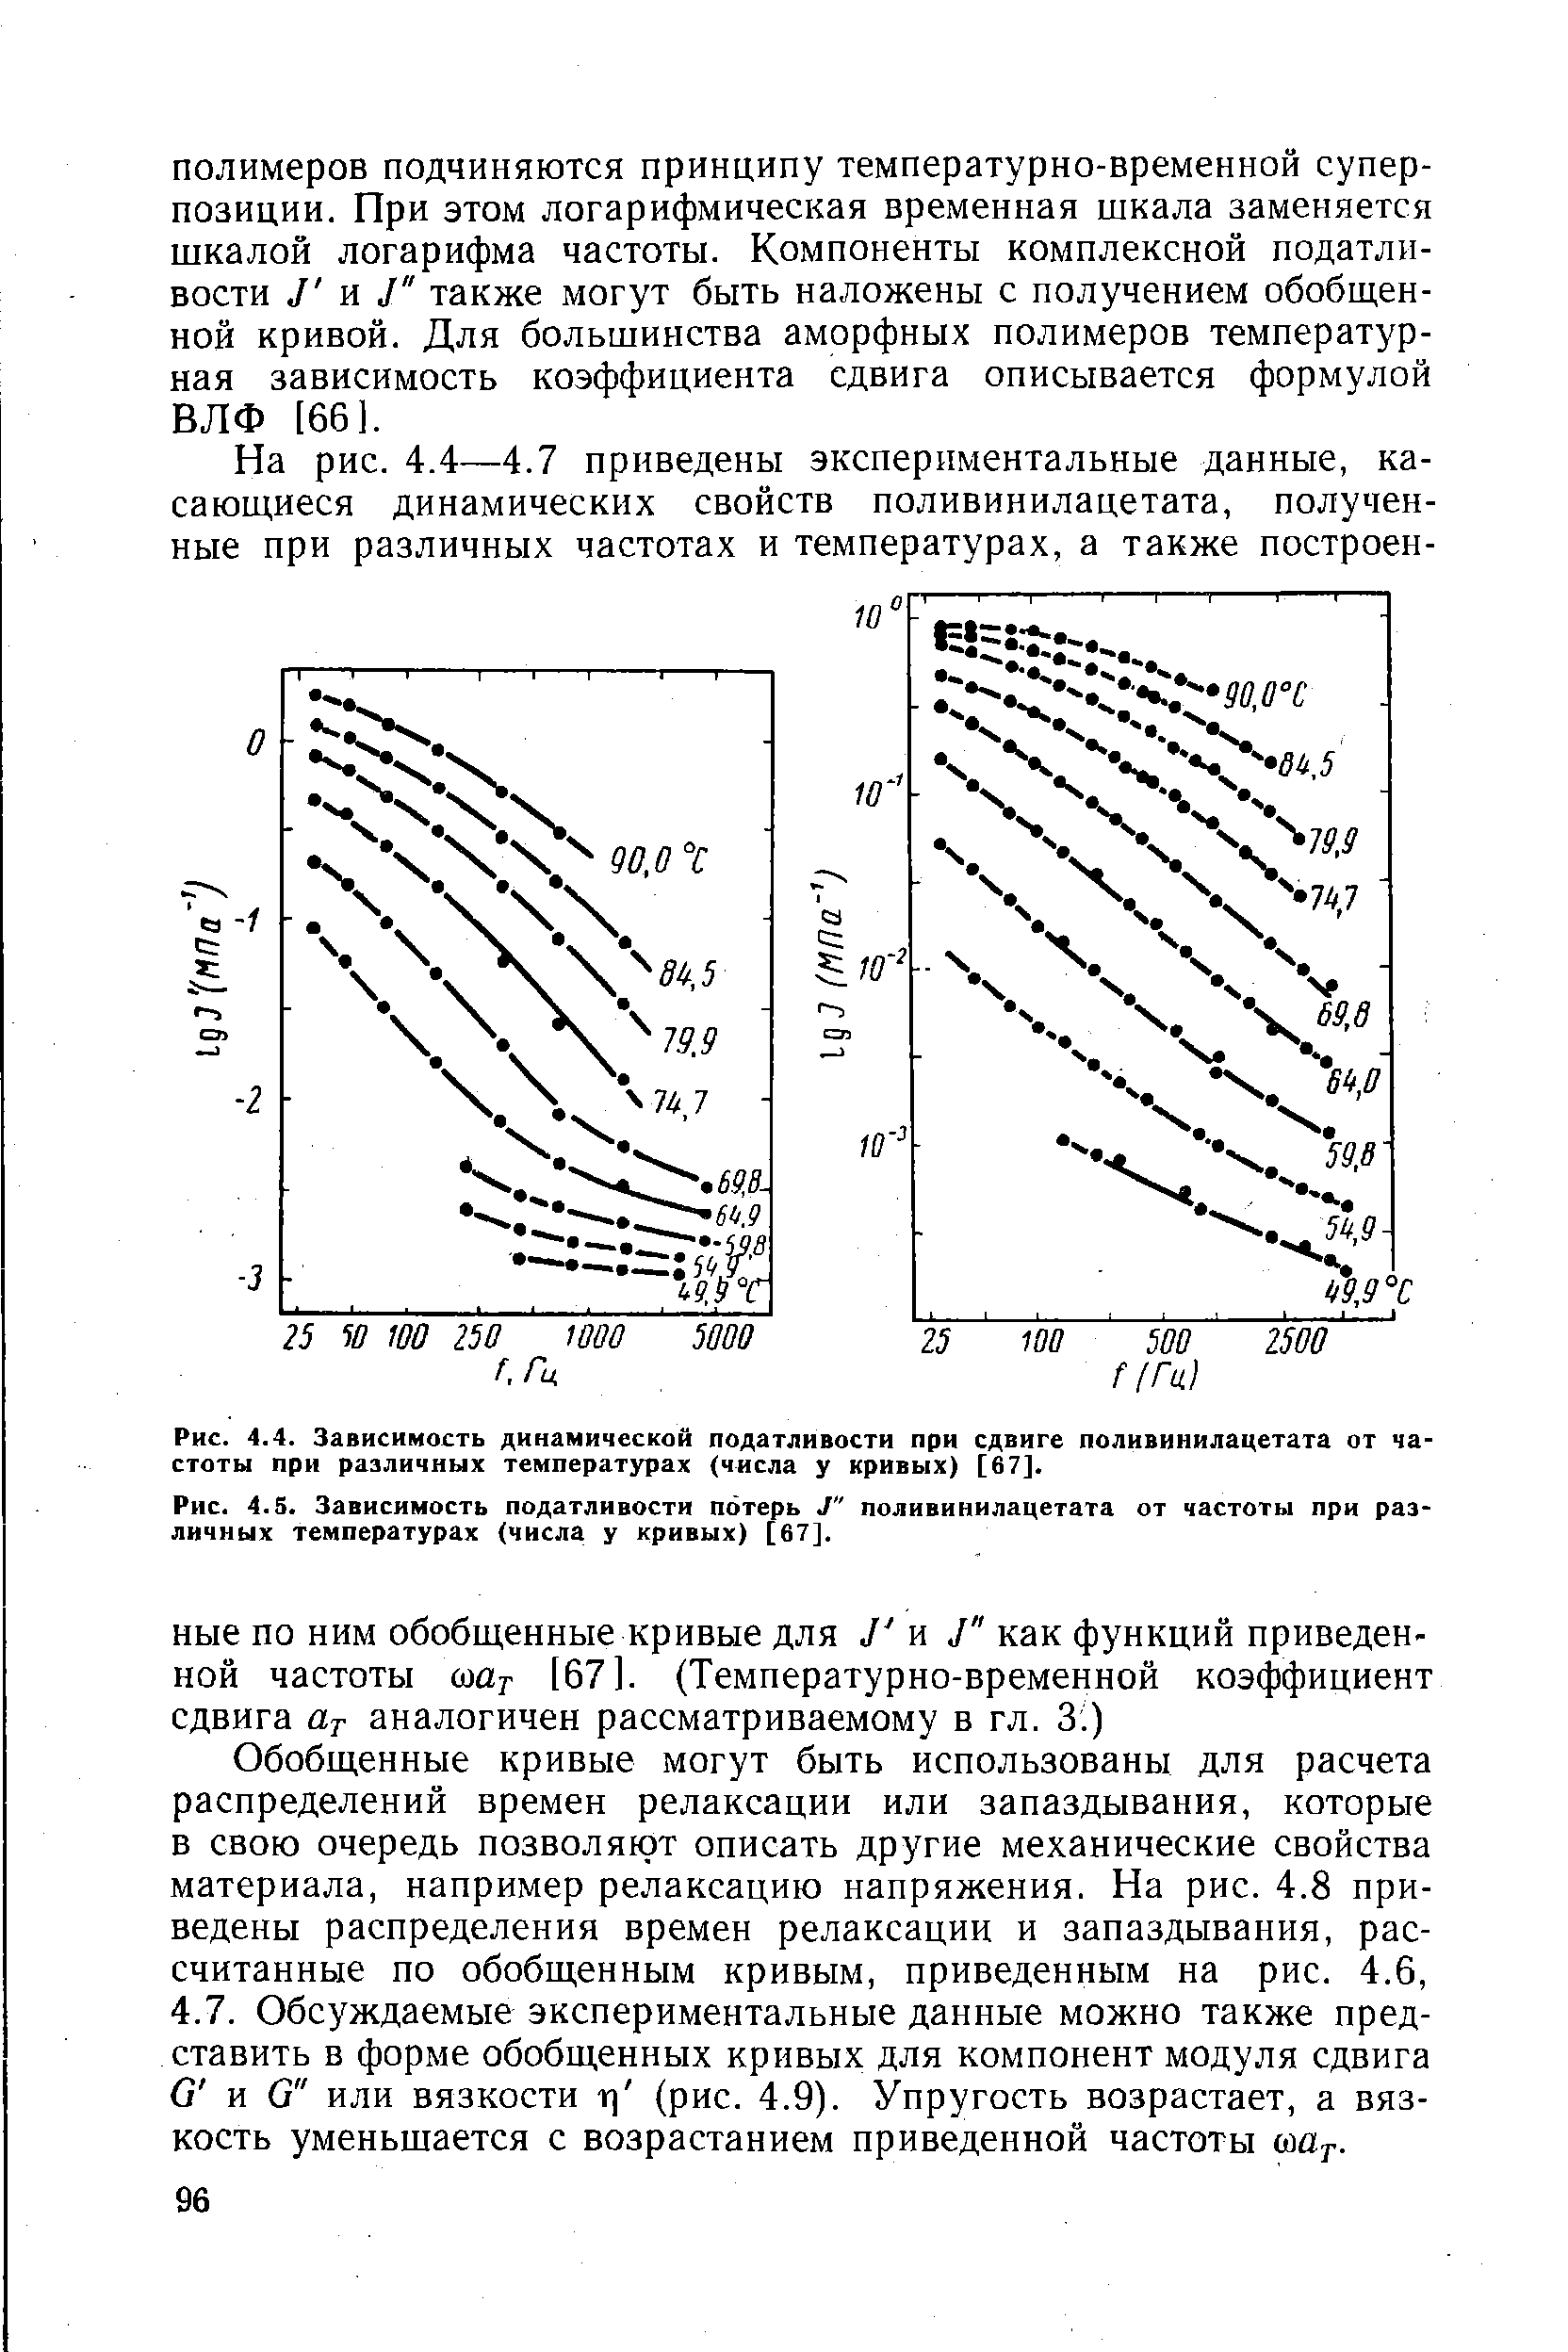 Рис. 4.5. Зависимость податливости потерь J" поливинилацетата от частоты при различных температурах (числа у кривых) [67].
